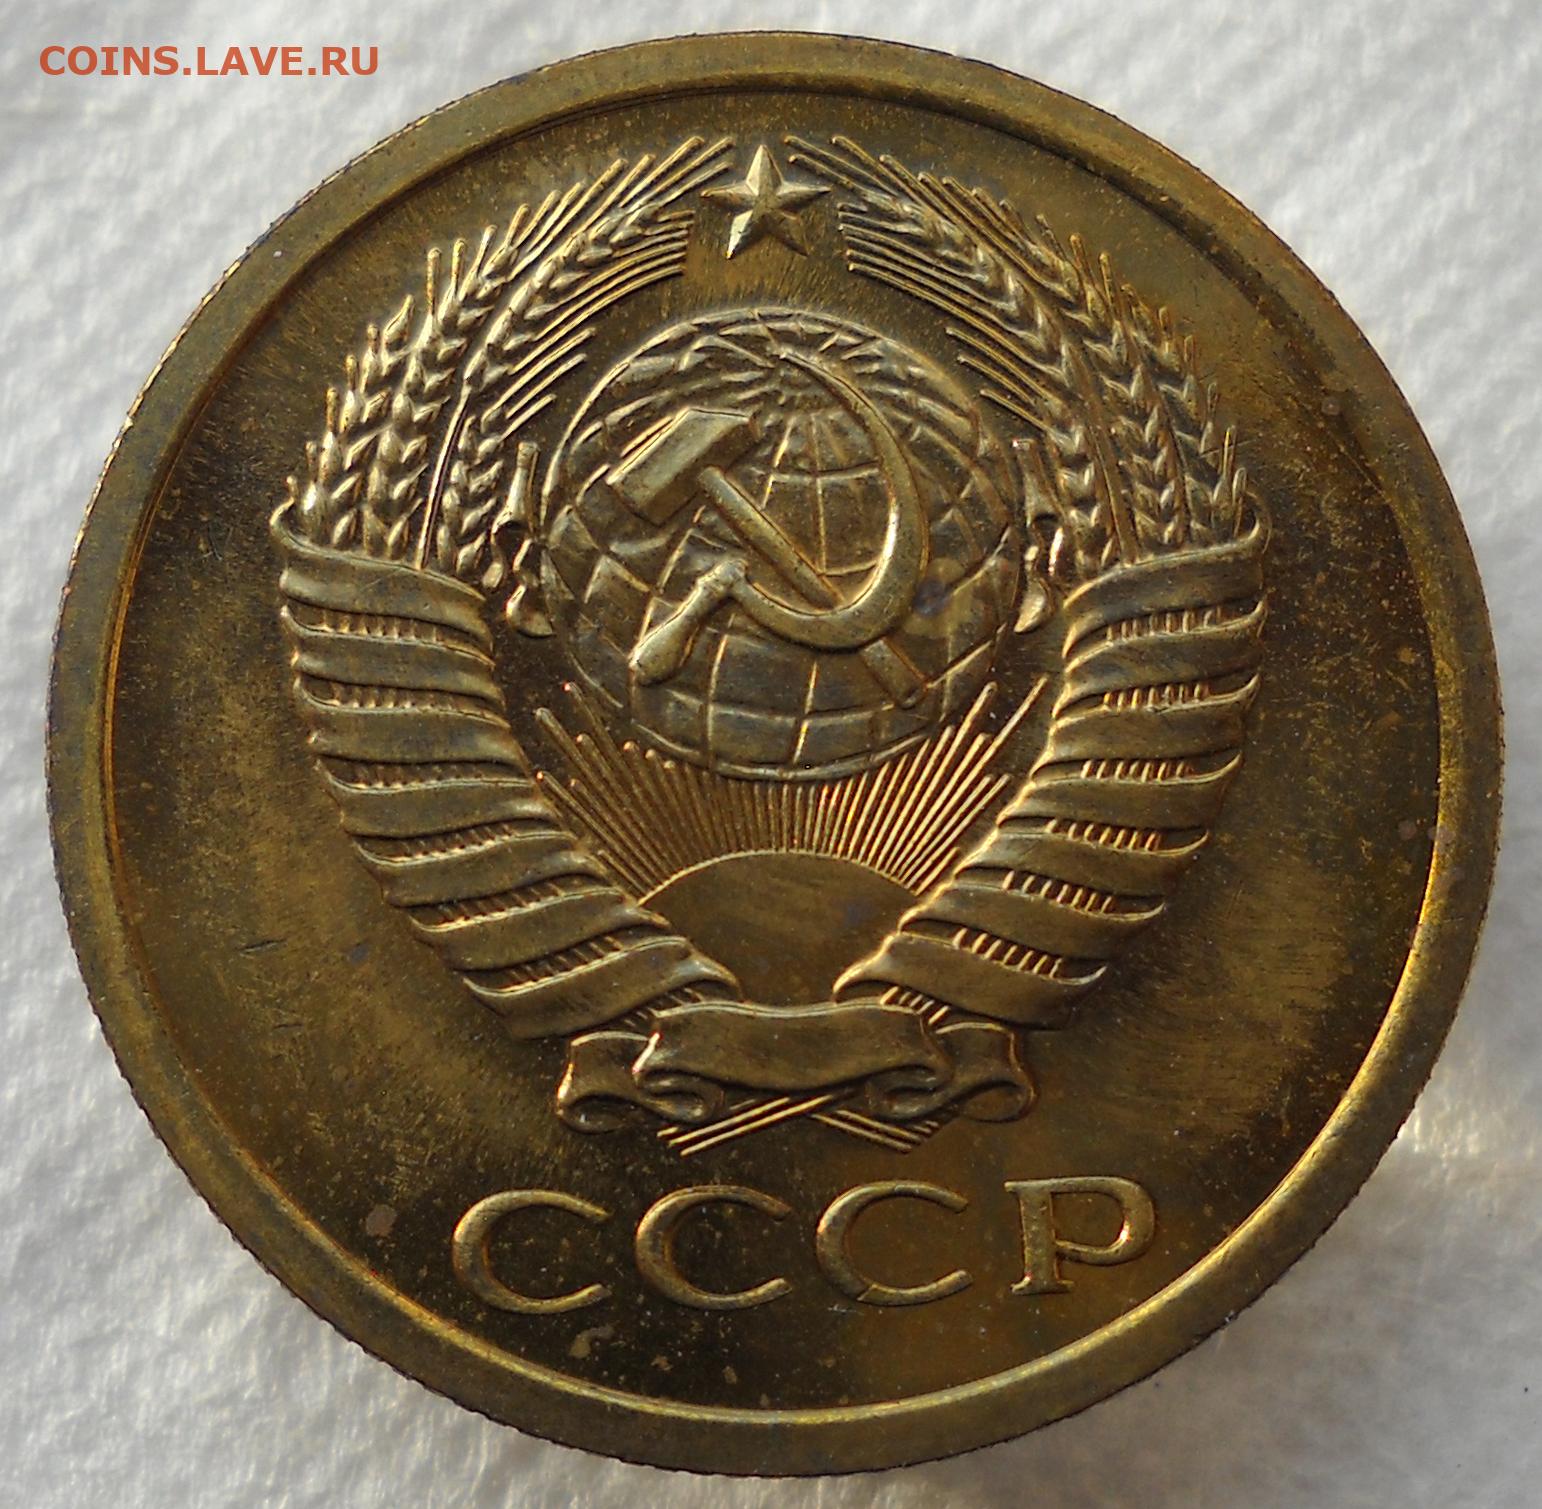 60 рублей 7 копеек. 5 Копеек 1985 штемпельный блеск цены. 3 Копейки 67 года цена.